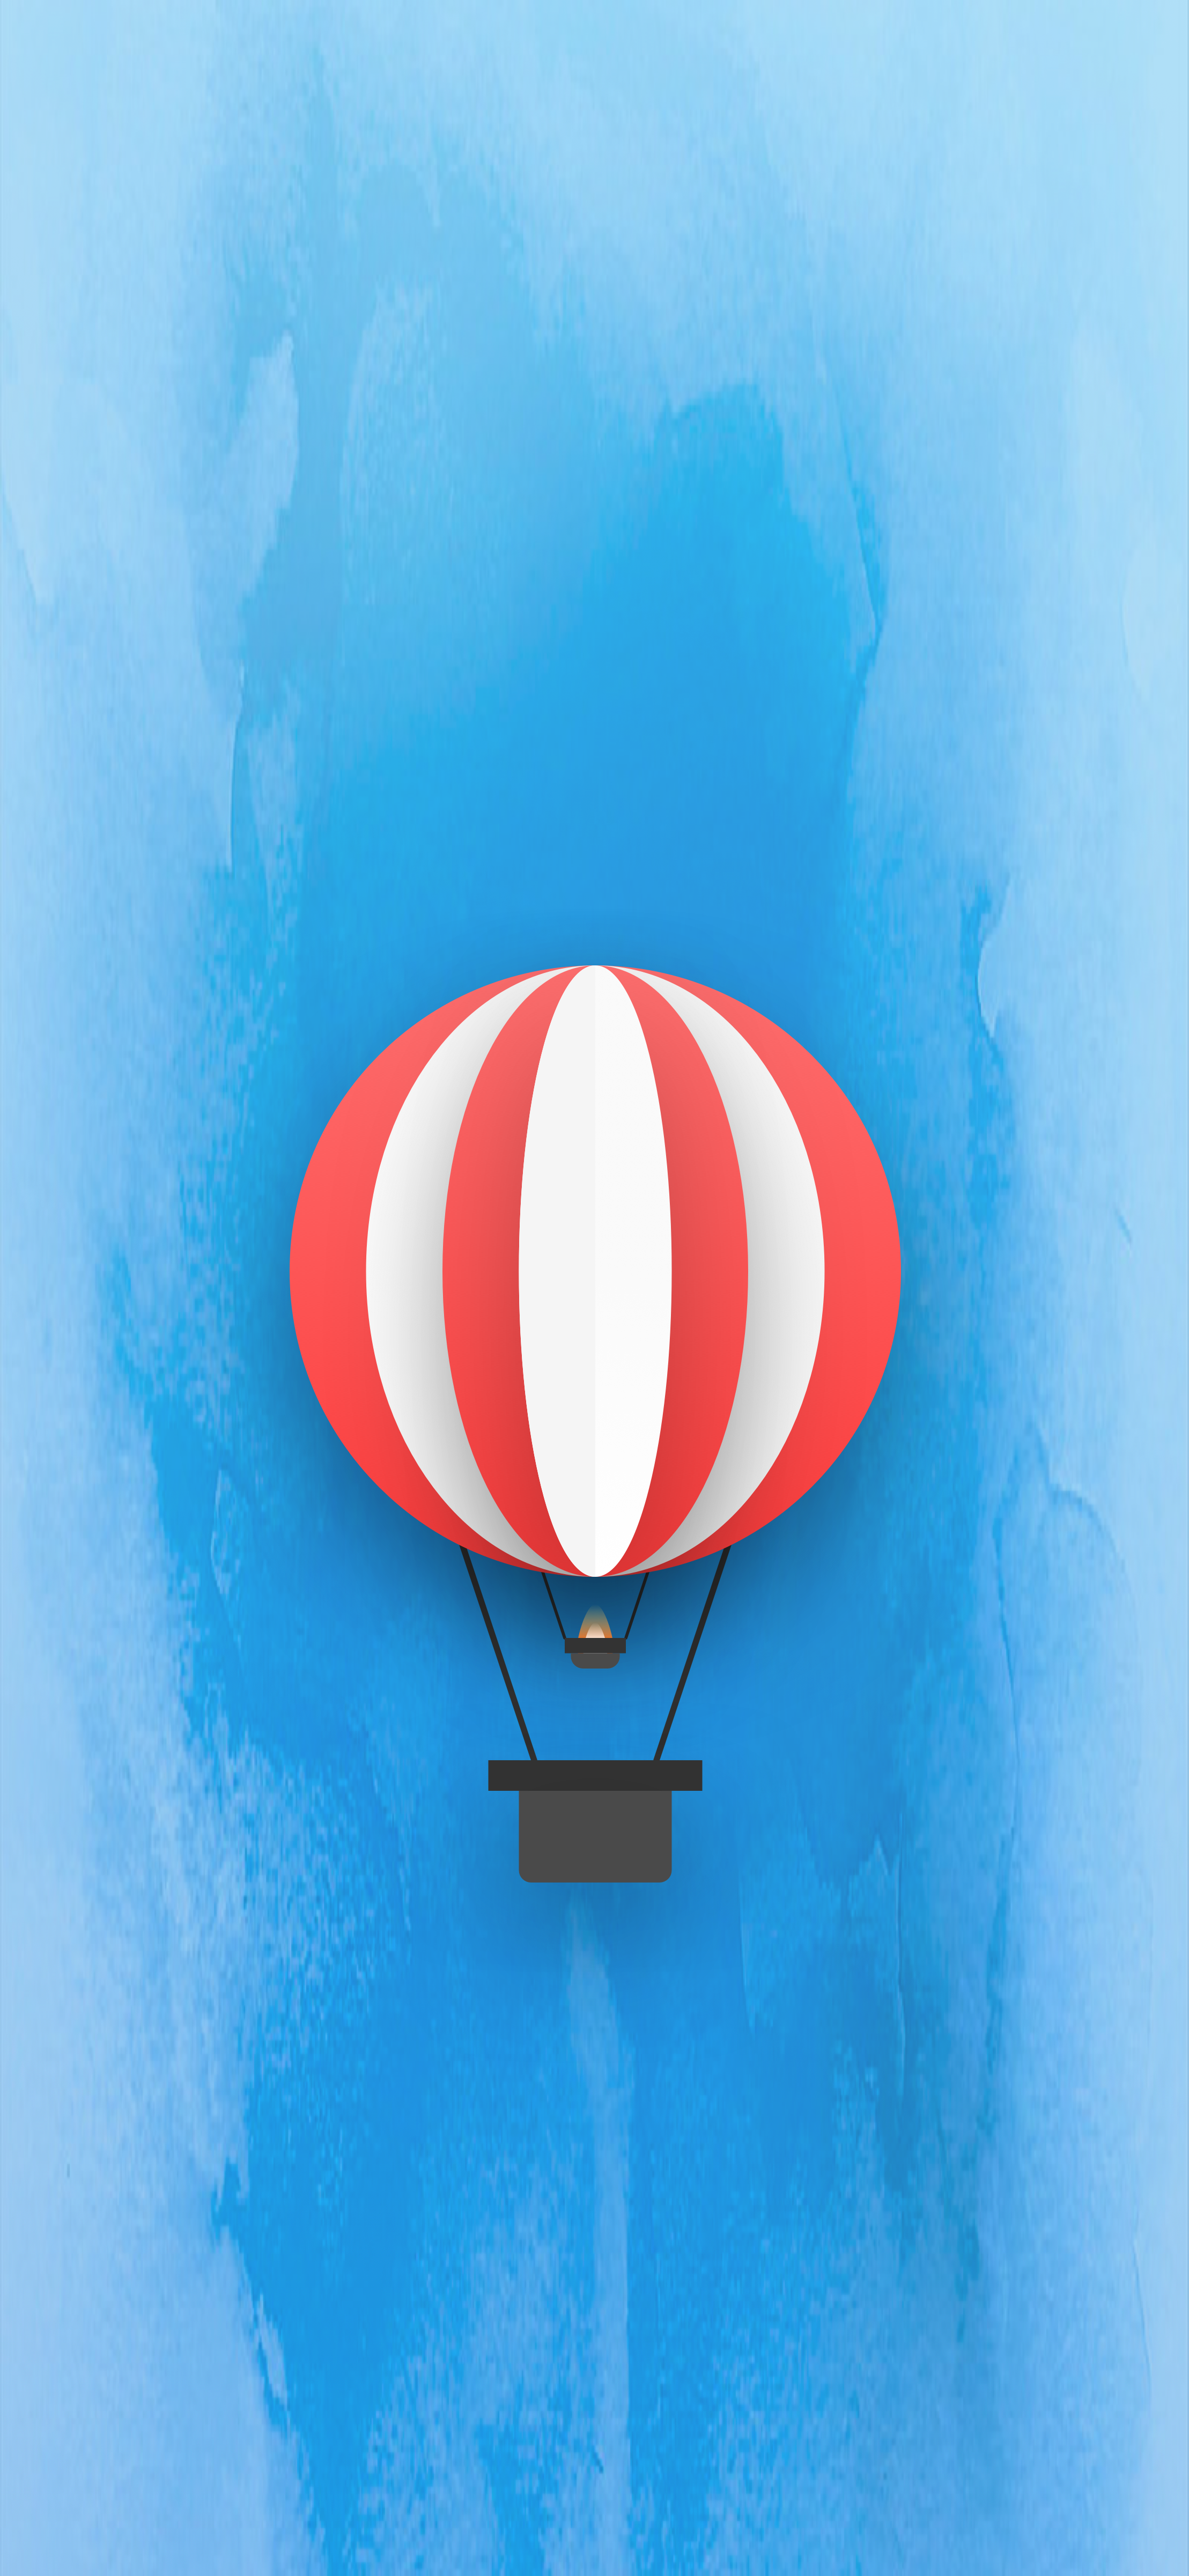 Hot Air Balloon iPhone Wallpaper